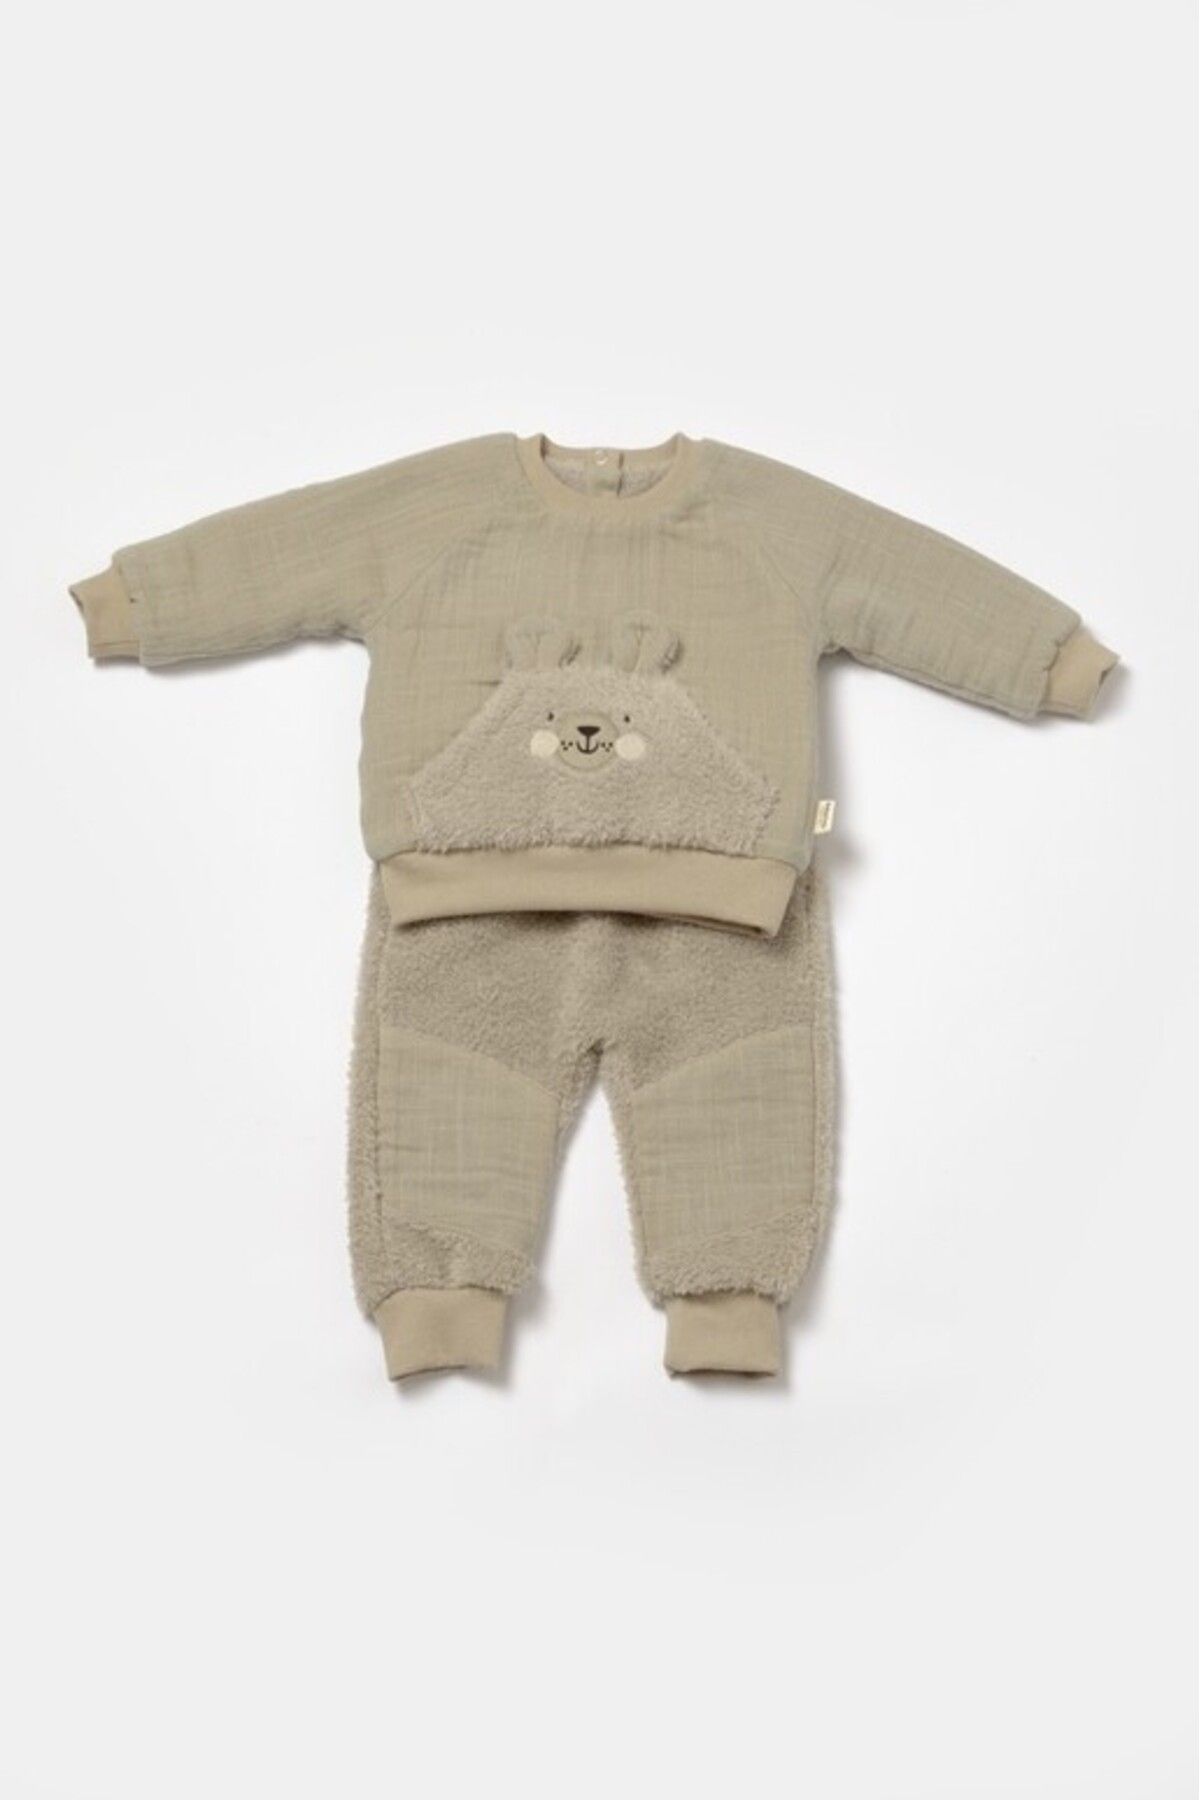 DIDuStore GOTS Sertifikalı %100 Organik Pamuk, Sevimli Hayvan Figürlü Unisex Bebek Giyim Seti